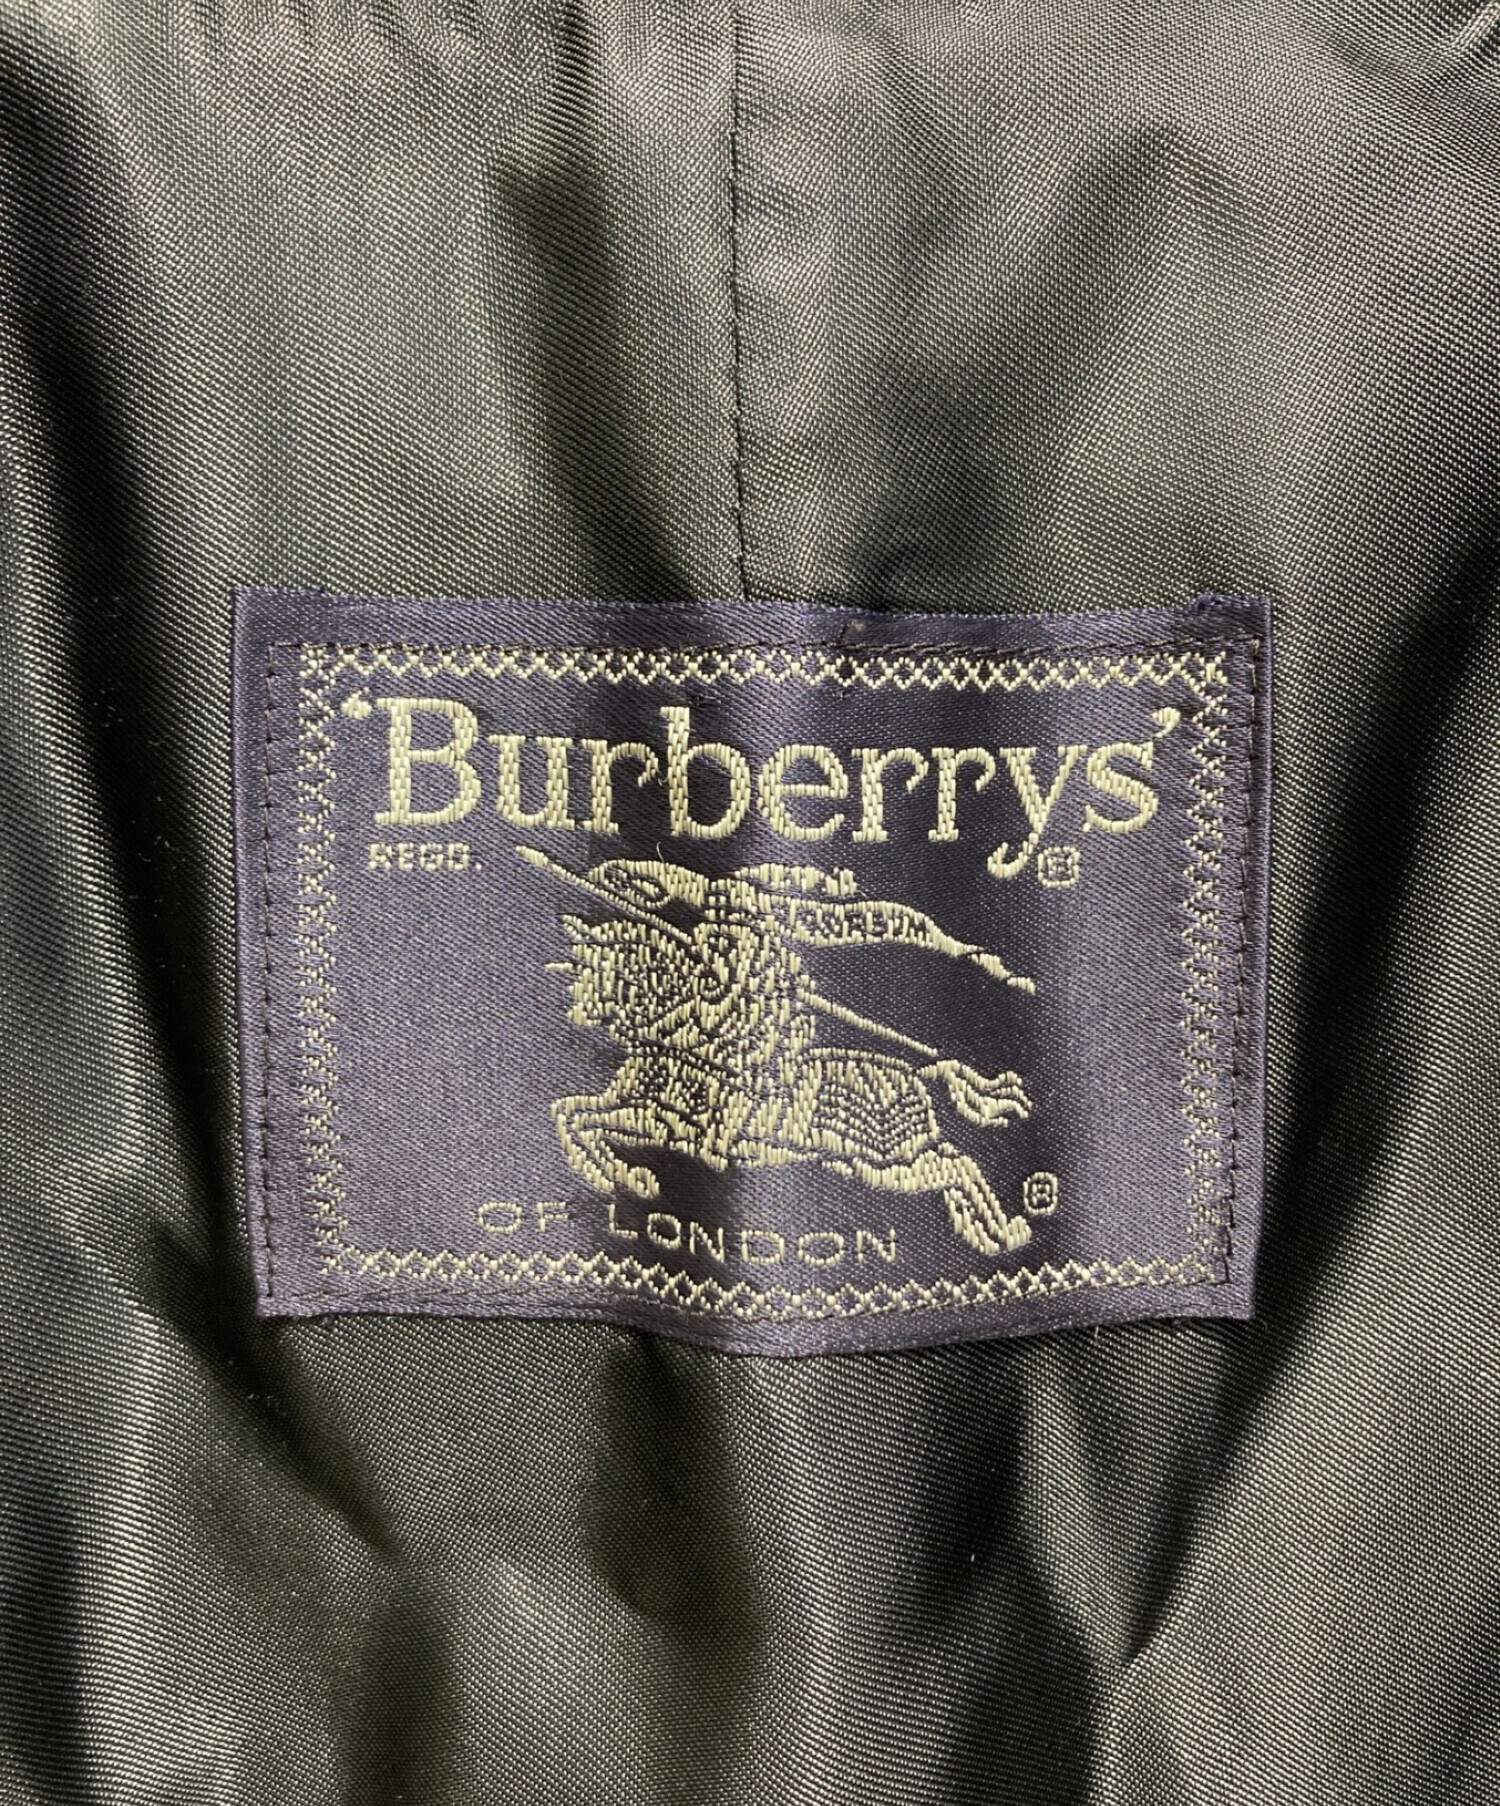 中古・古着通販】Burberry's (バーバリーズ) 二枚襟ライナー付き 